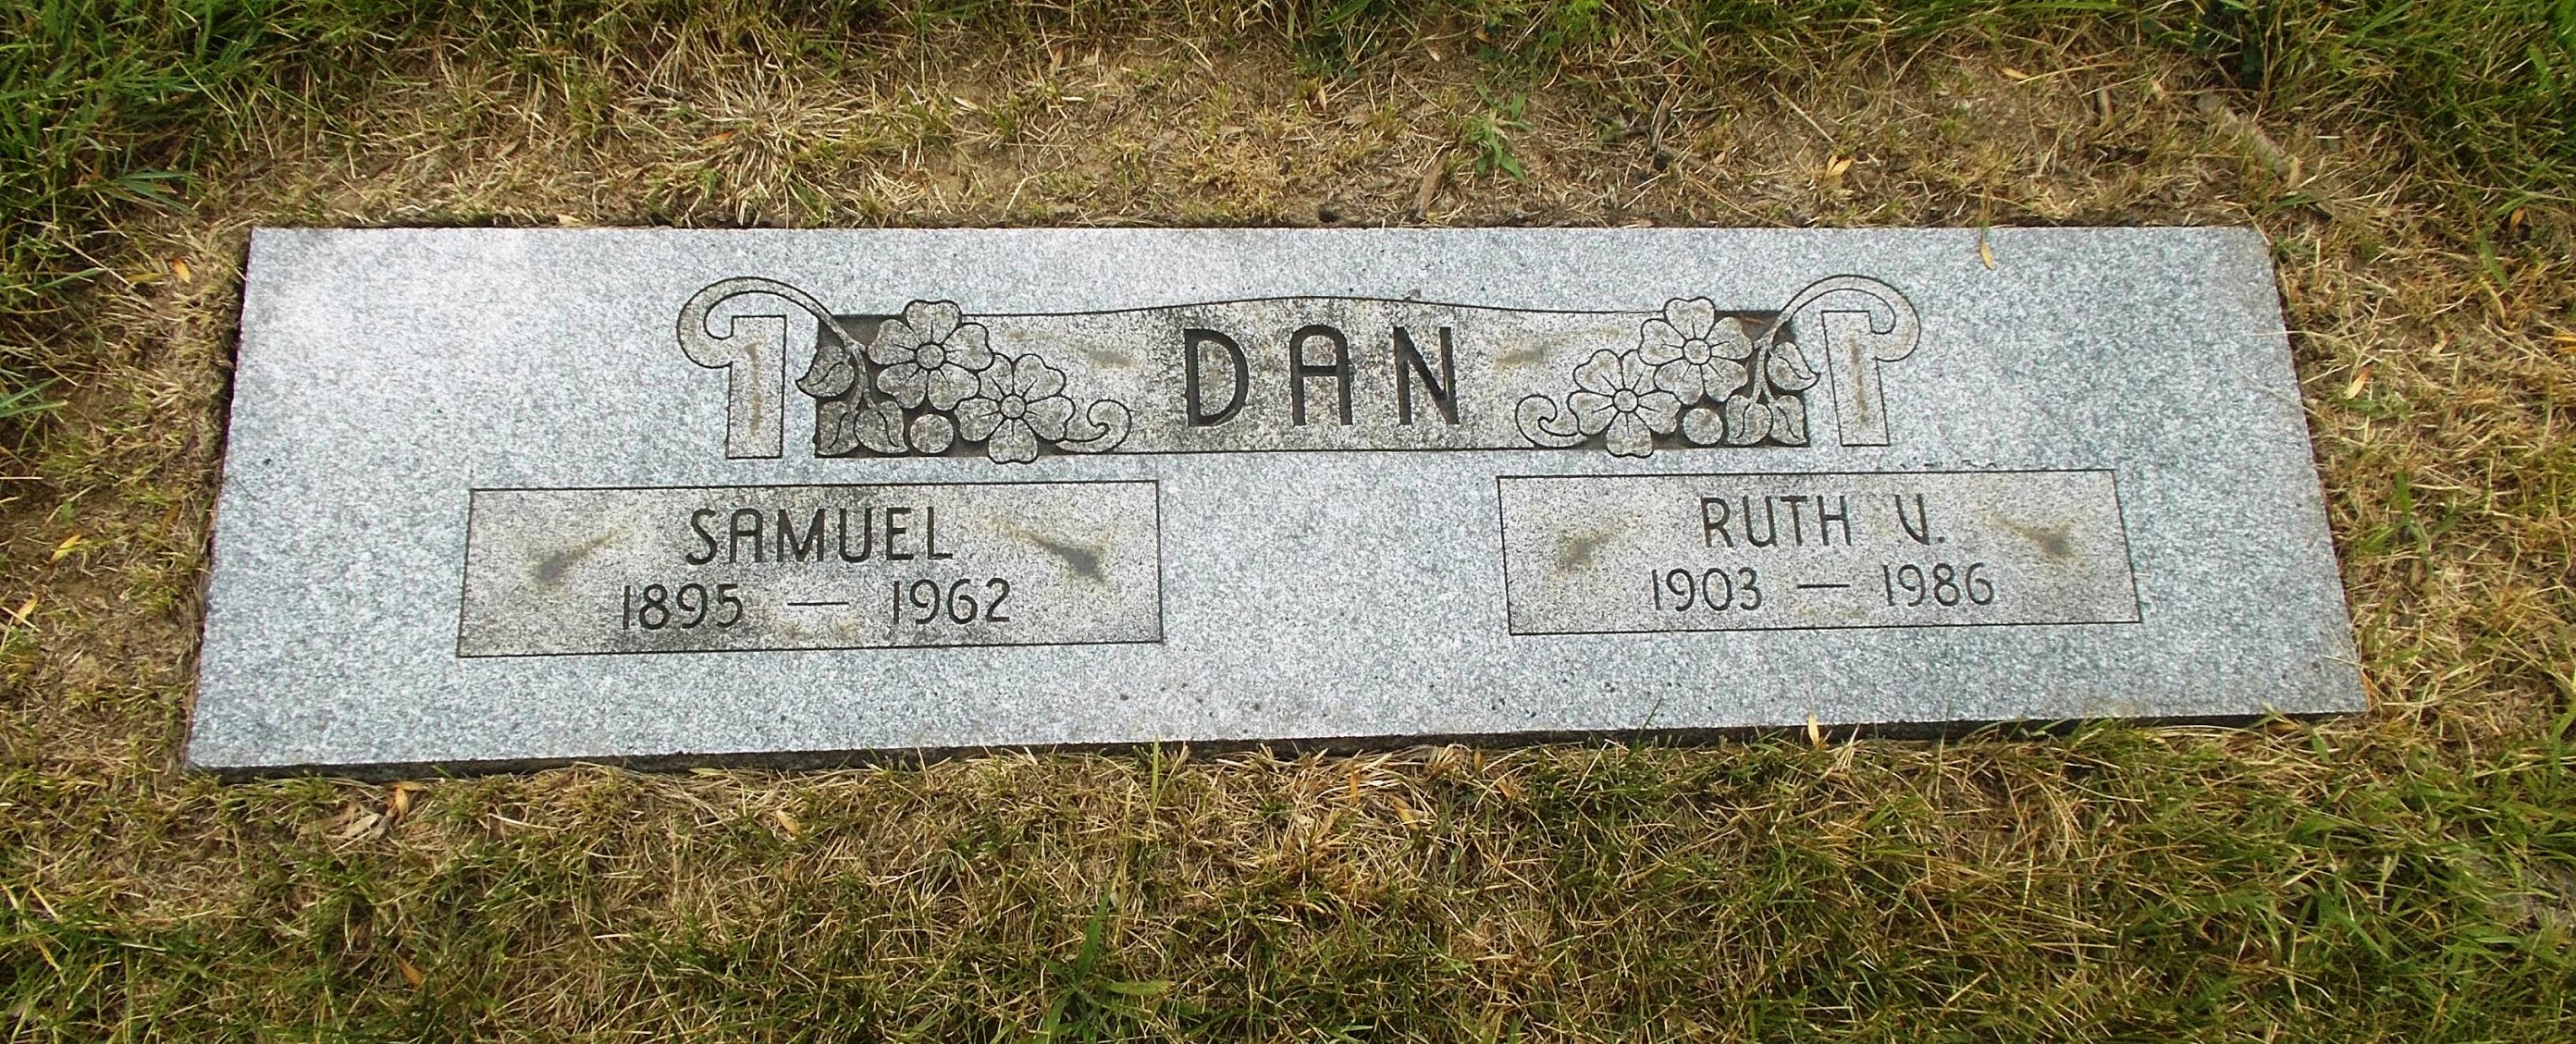 Ruth V Dan